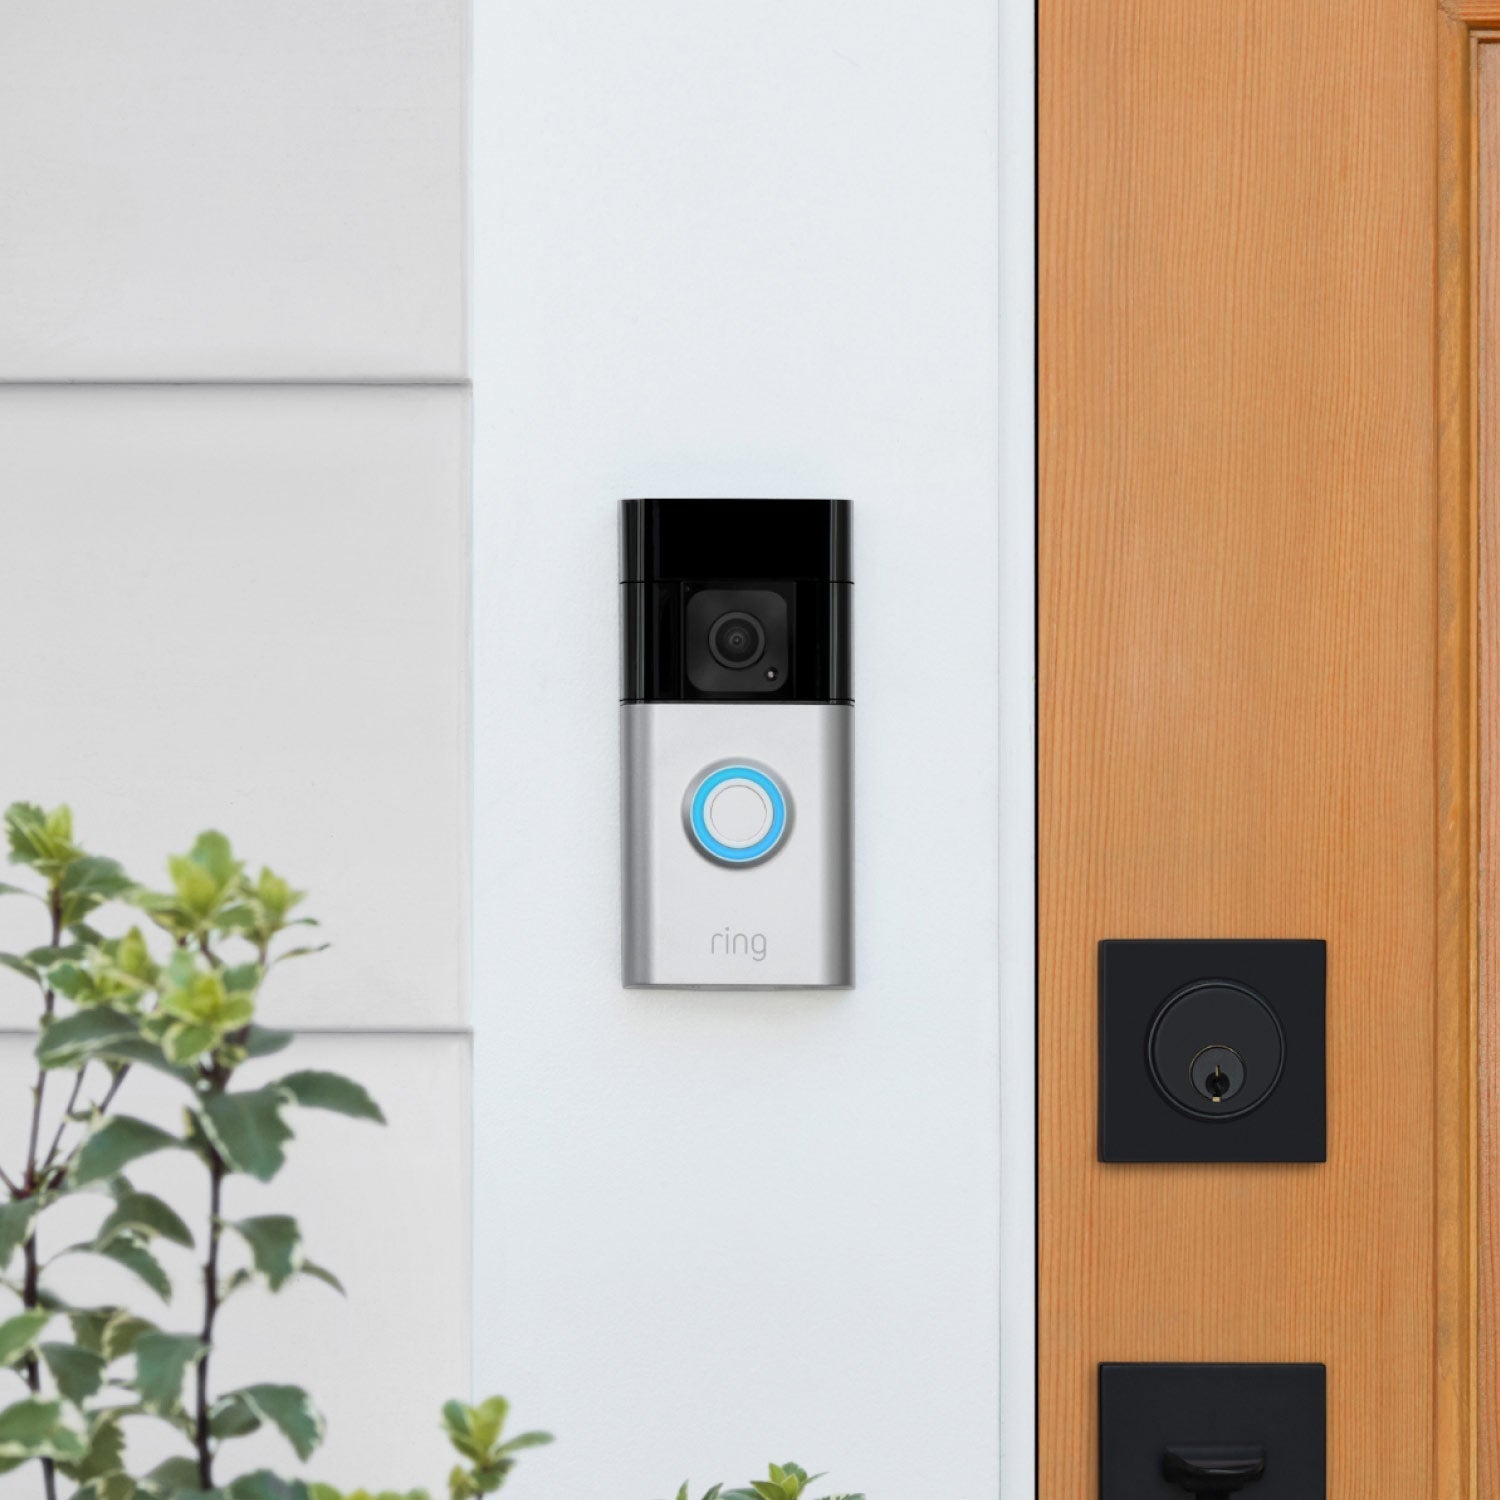 Battery Doorbell Plus (Video Doorbell) (for Certified Refurbished) - Close-up of Battery Doorbell Plus in satin nickel finish installed next to a front door.